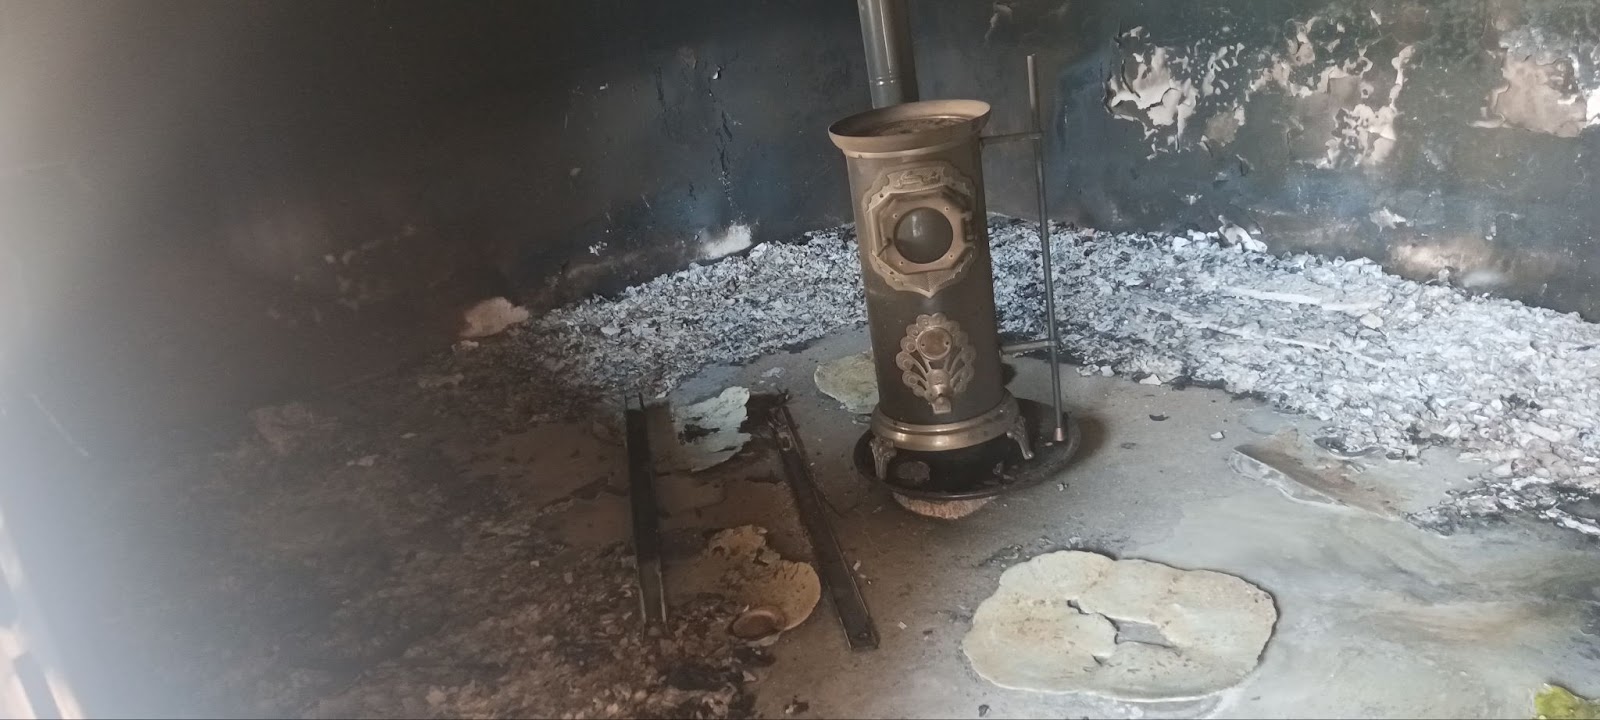 بشار: إحراق مكاتب المجلس من PYD لترهيب السكان وإخافتهم